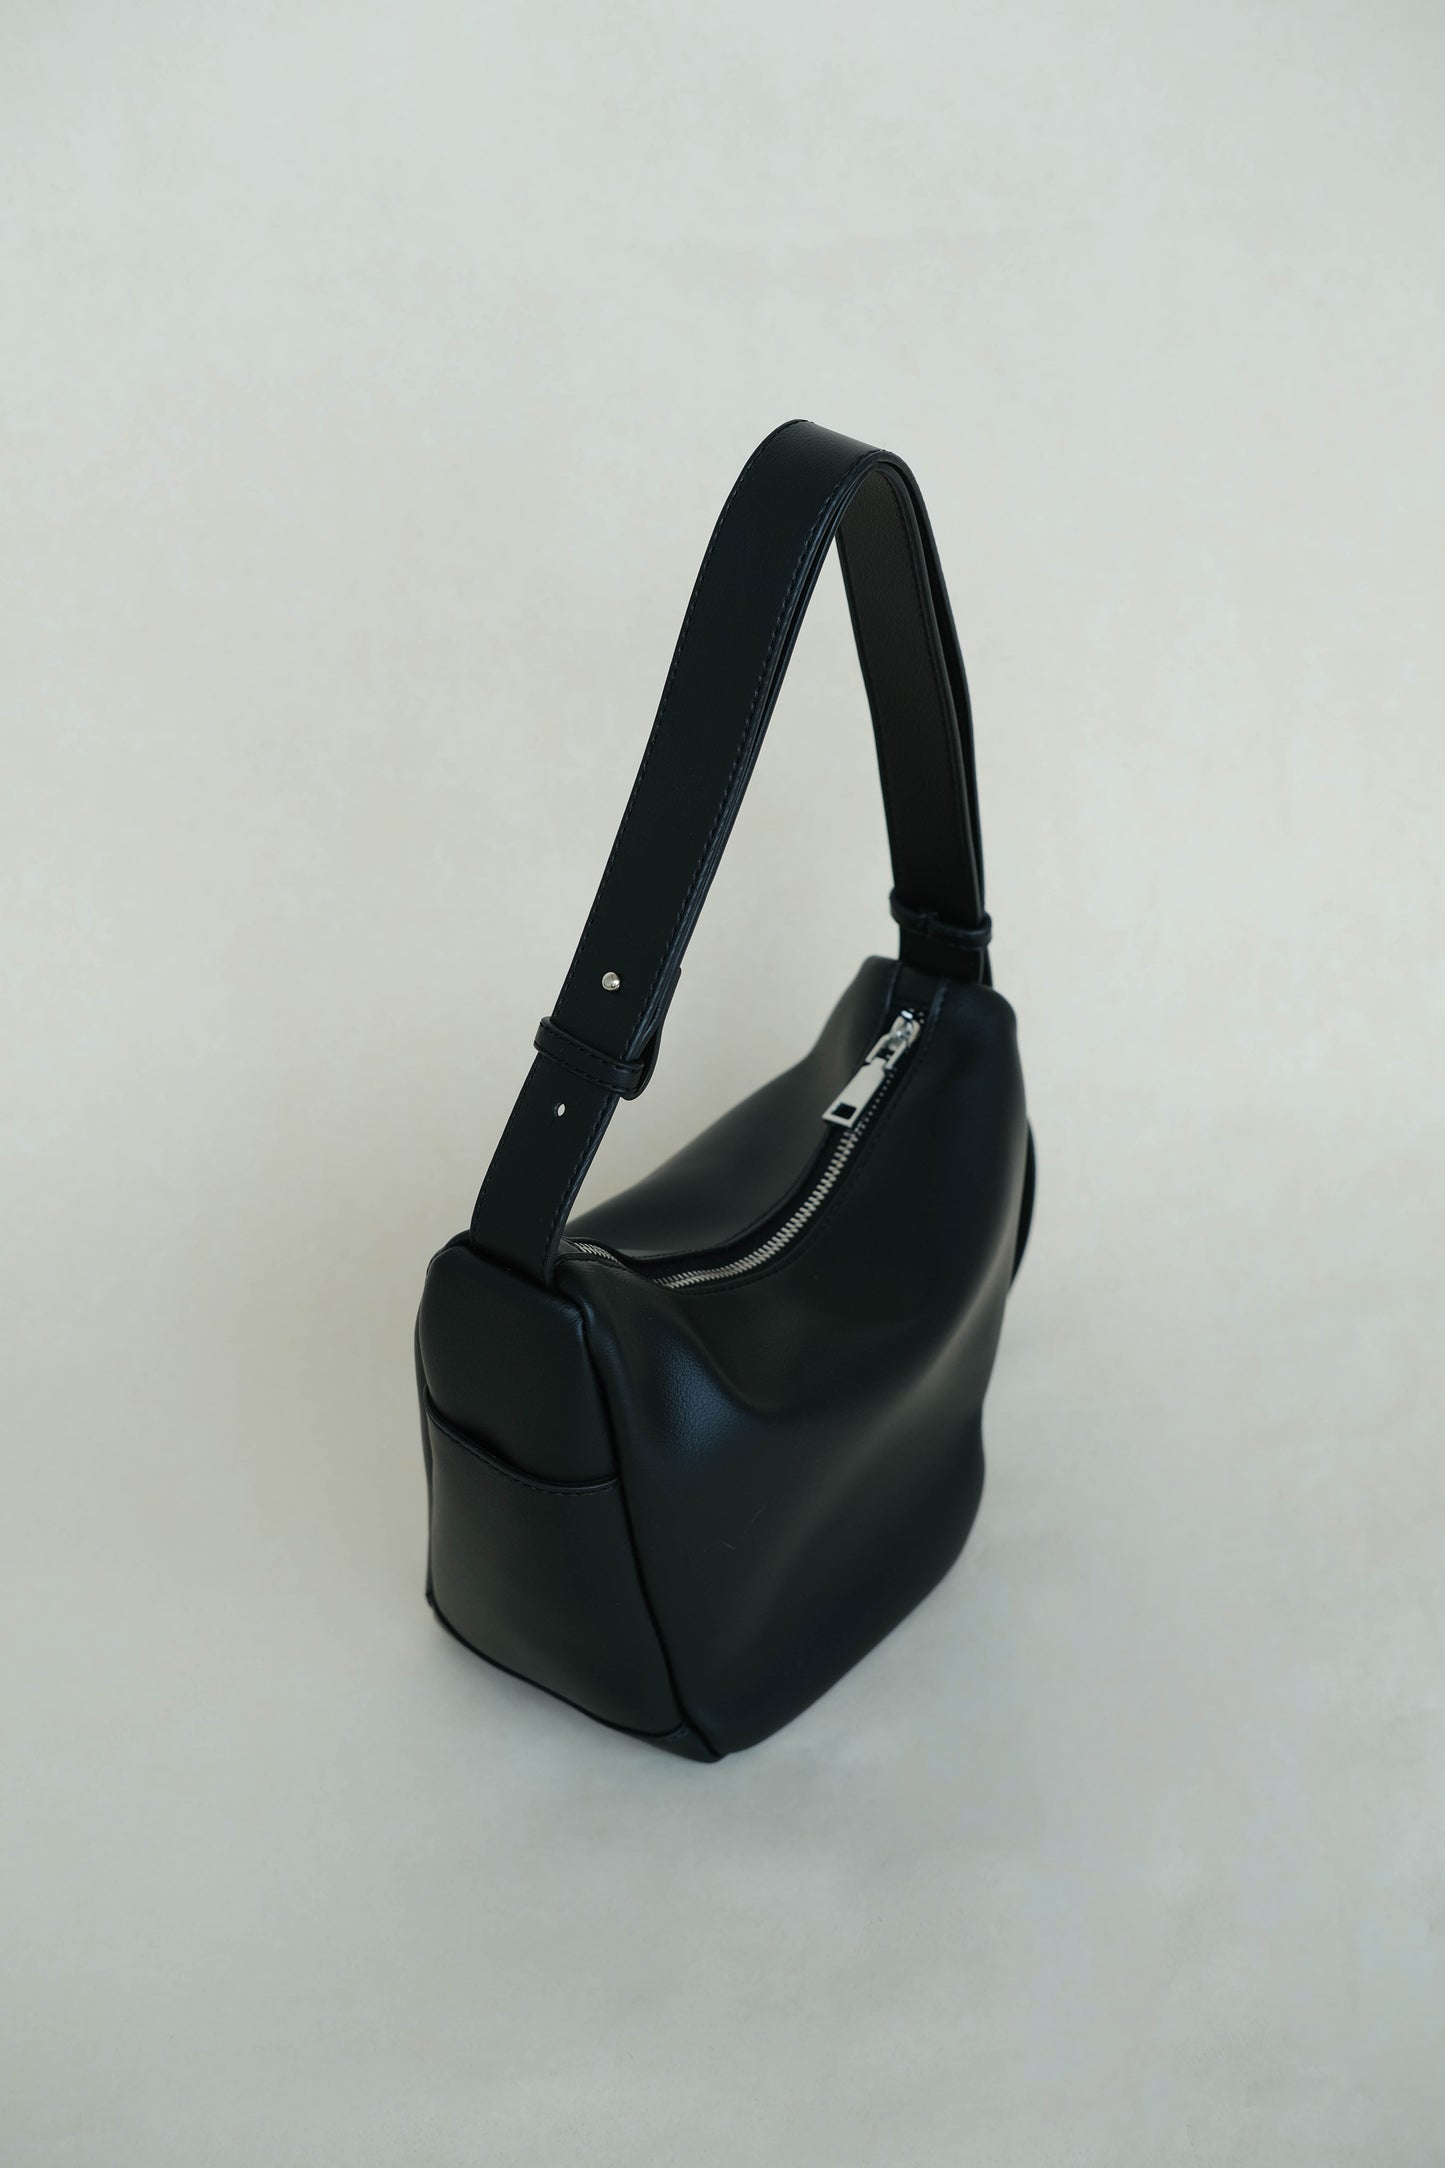 Supple leather axilla single-strap bag in classic black